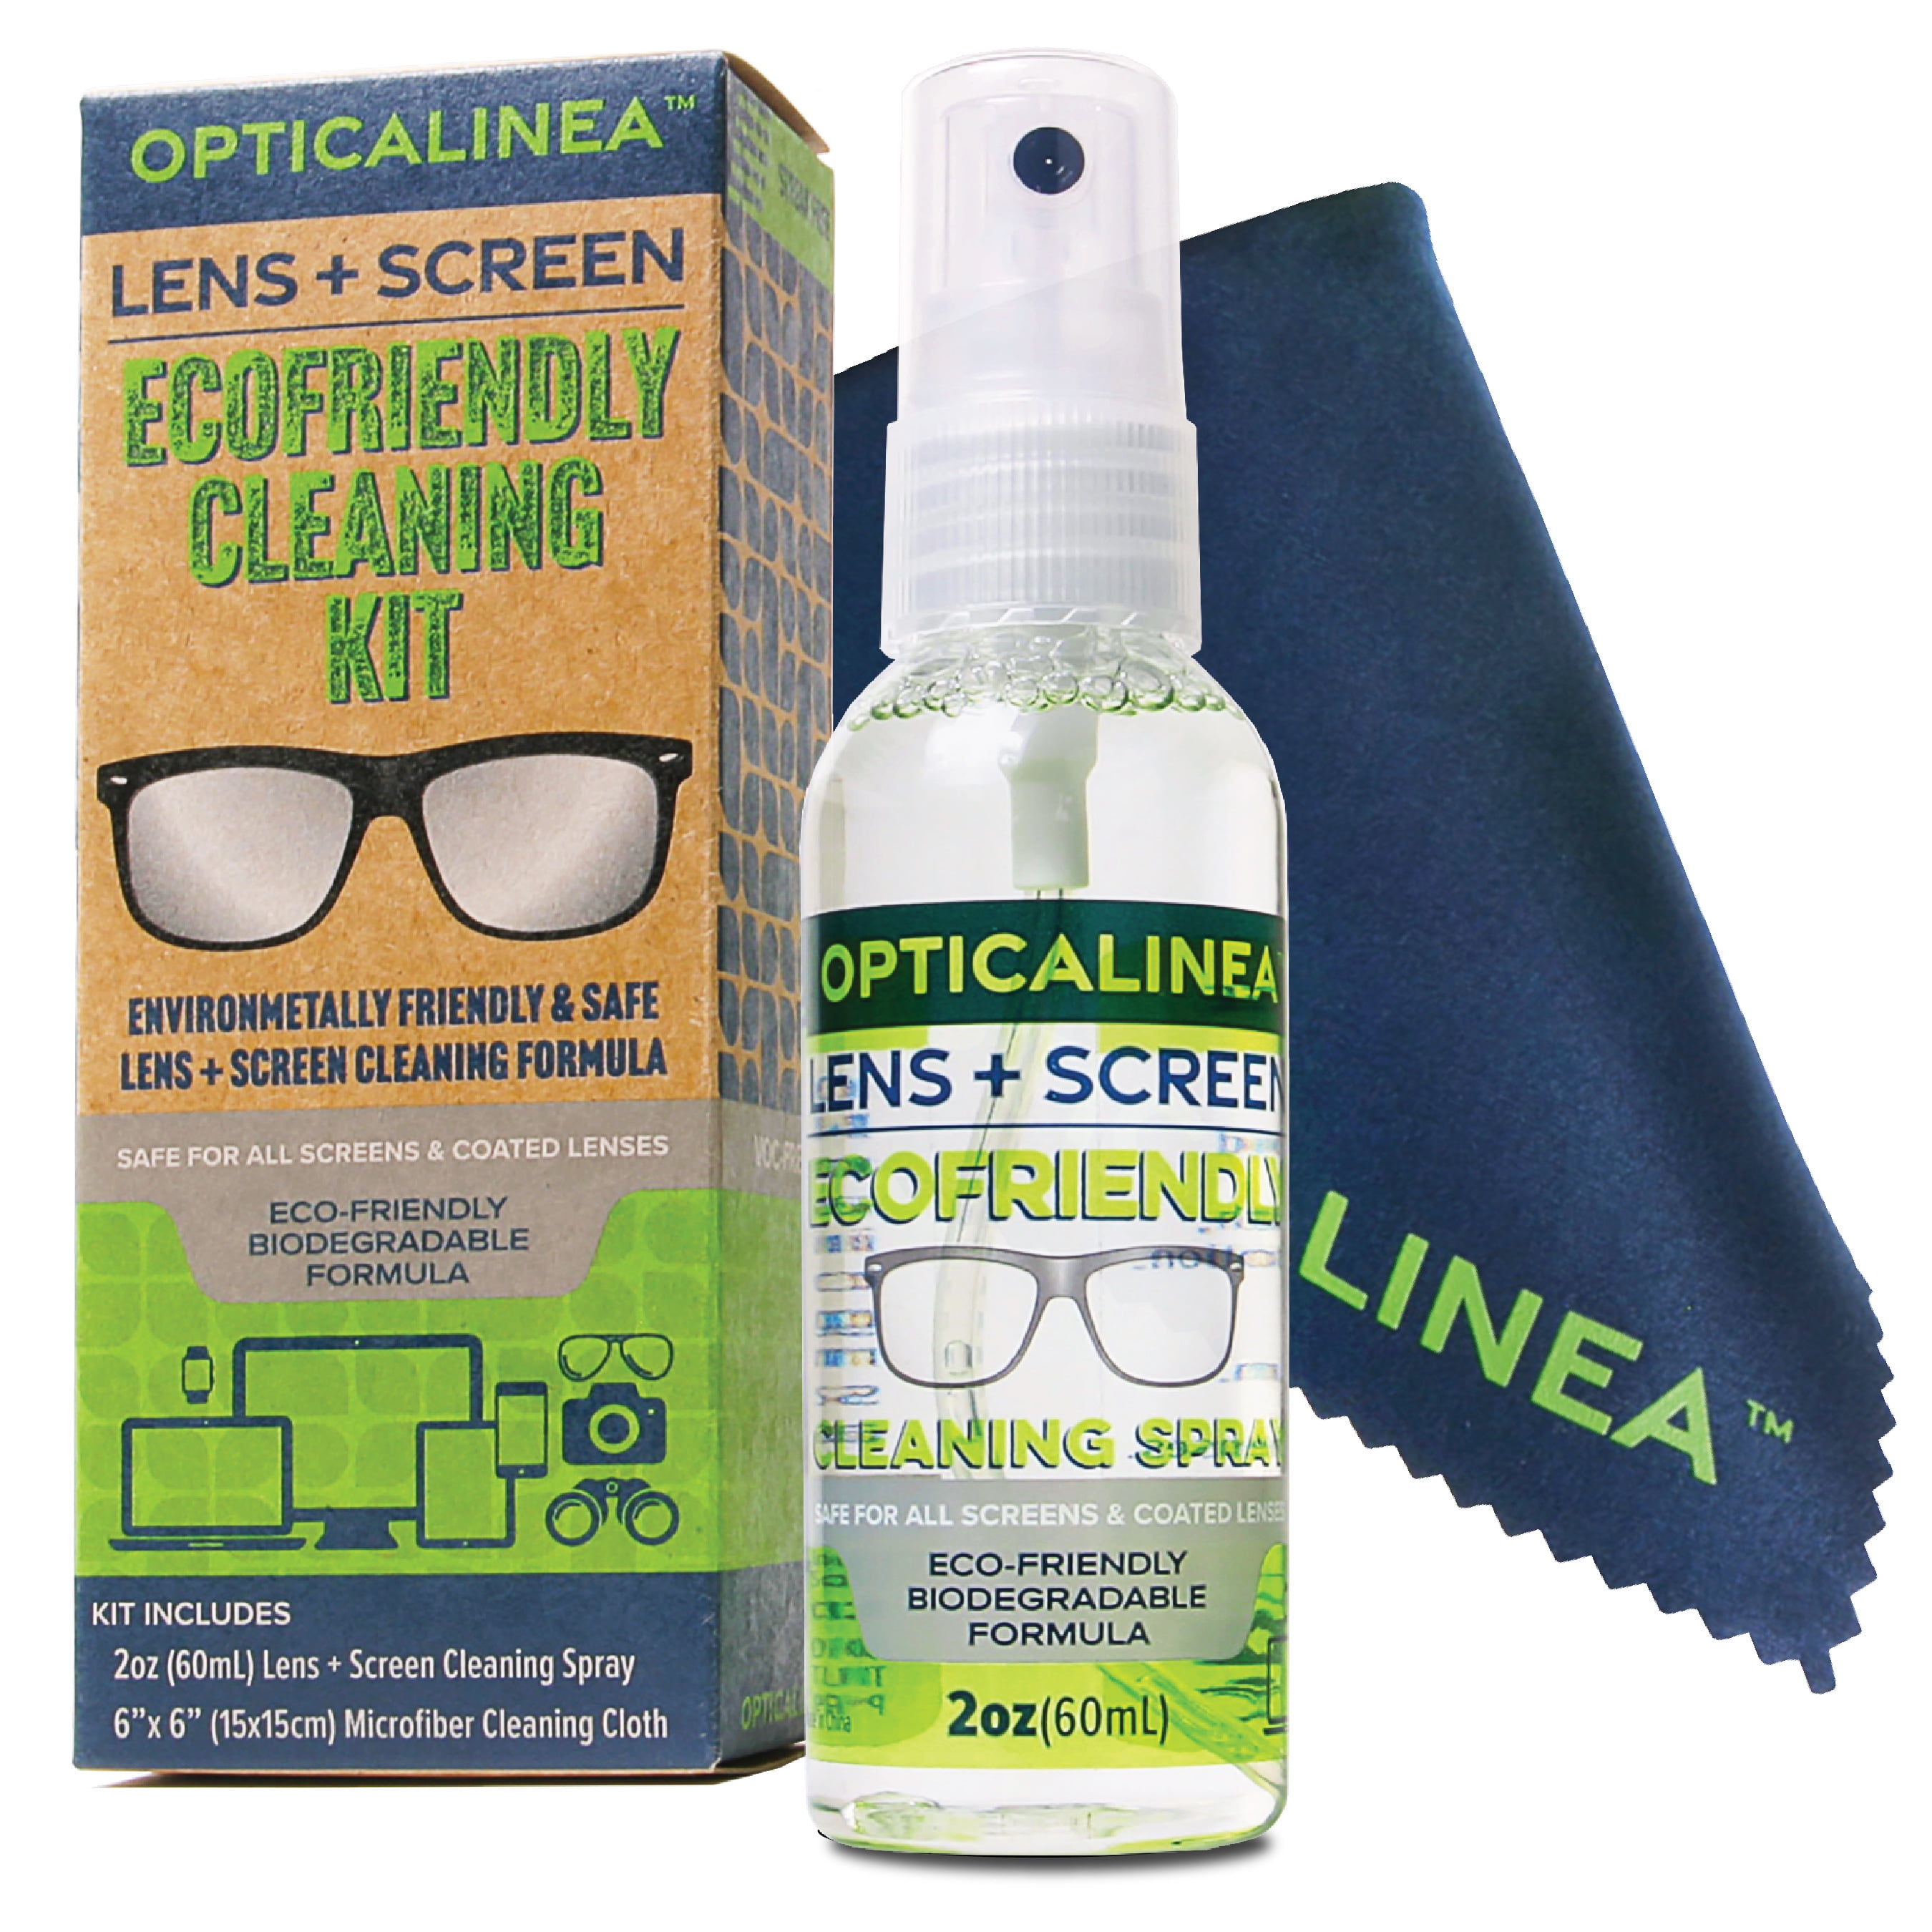 Eye Glasses Lens Cleaner - Eyeglass Cleaner Kit